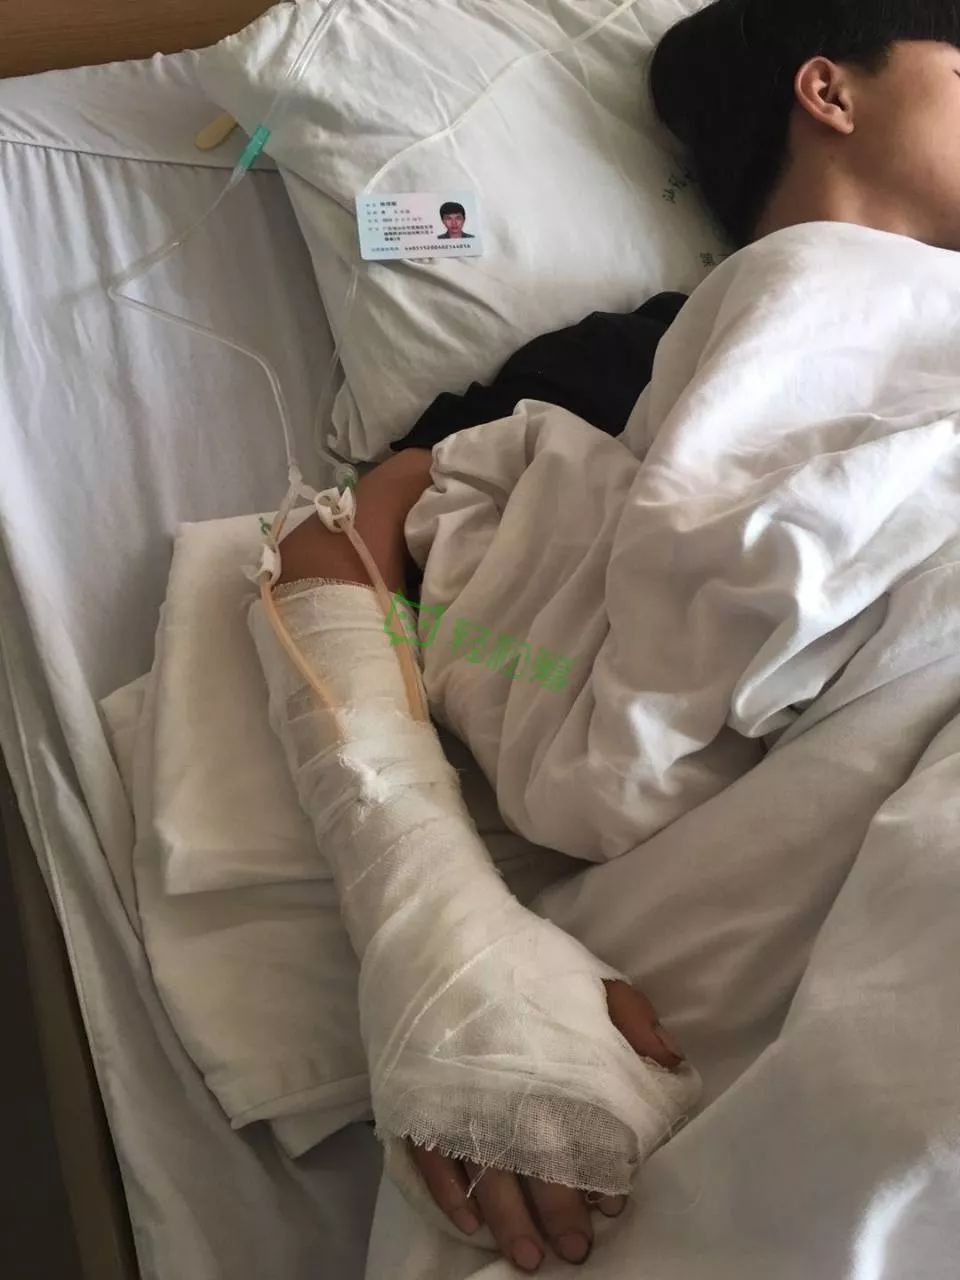 意外澄海16岁少年突发车祸右手被拖行致手筋断裂更让人心酸的是